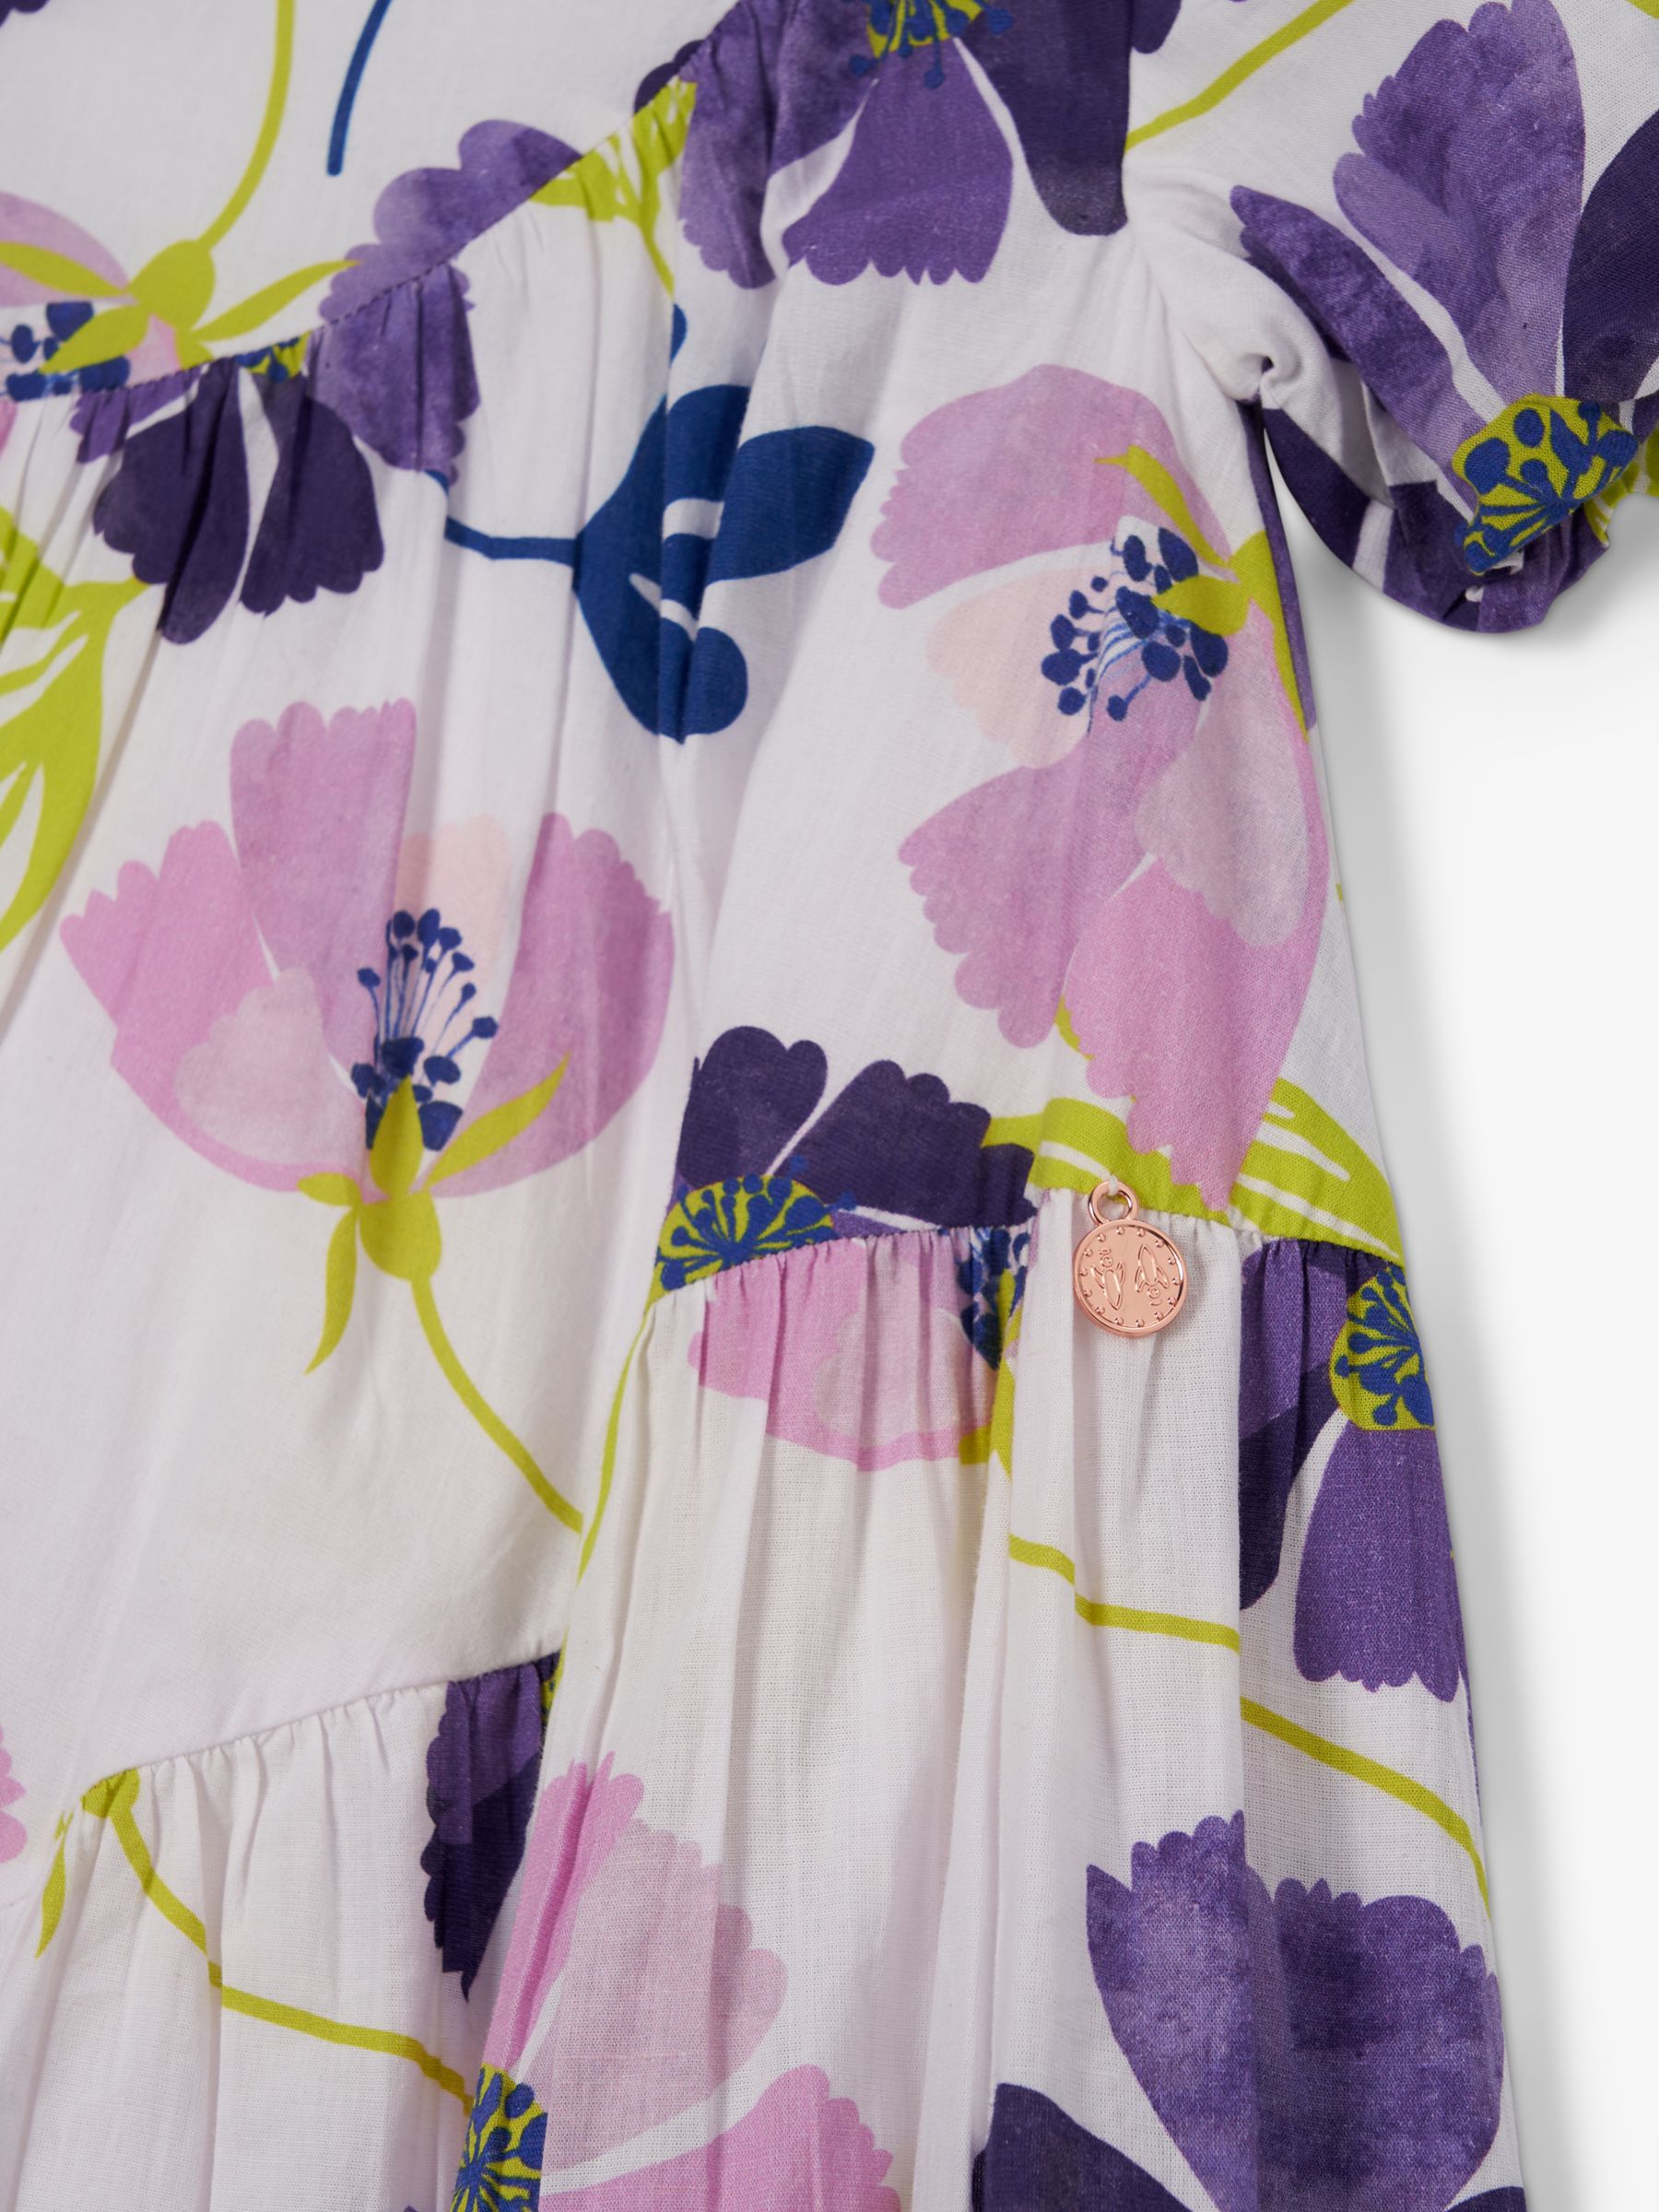 Buy Angel & Rocket Kids' Jodie Orchid Print Asymmetric Swing Dress, Multi Online at johnlewis.com